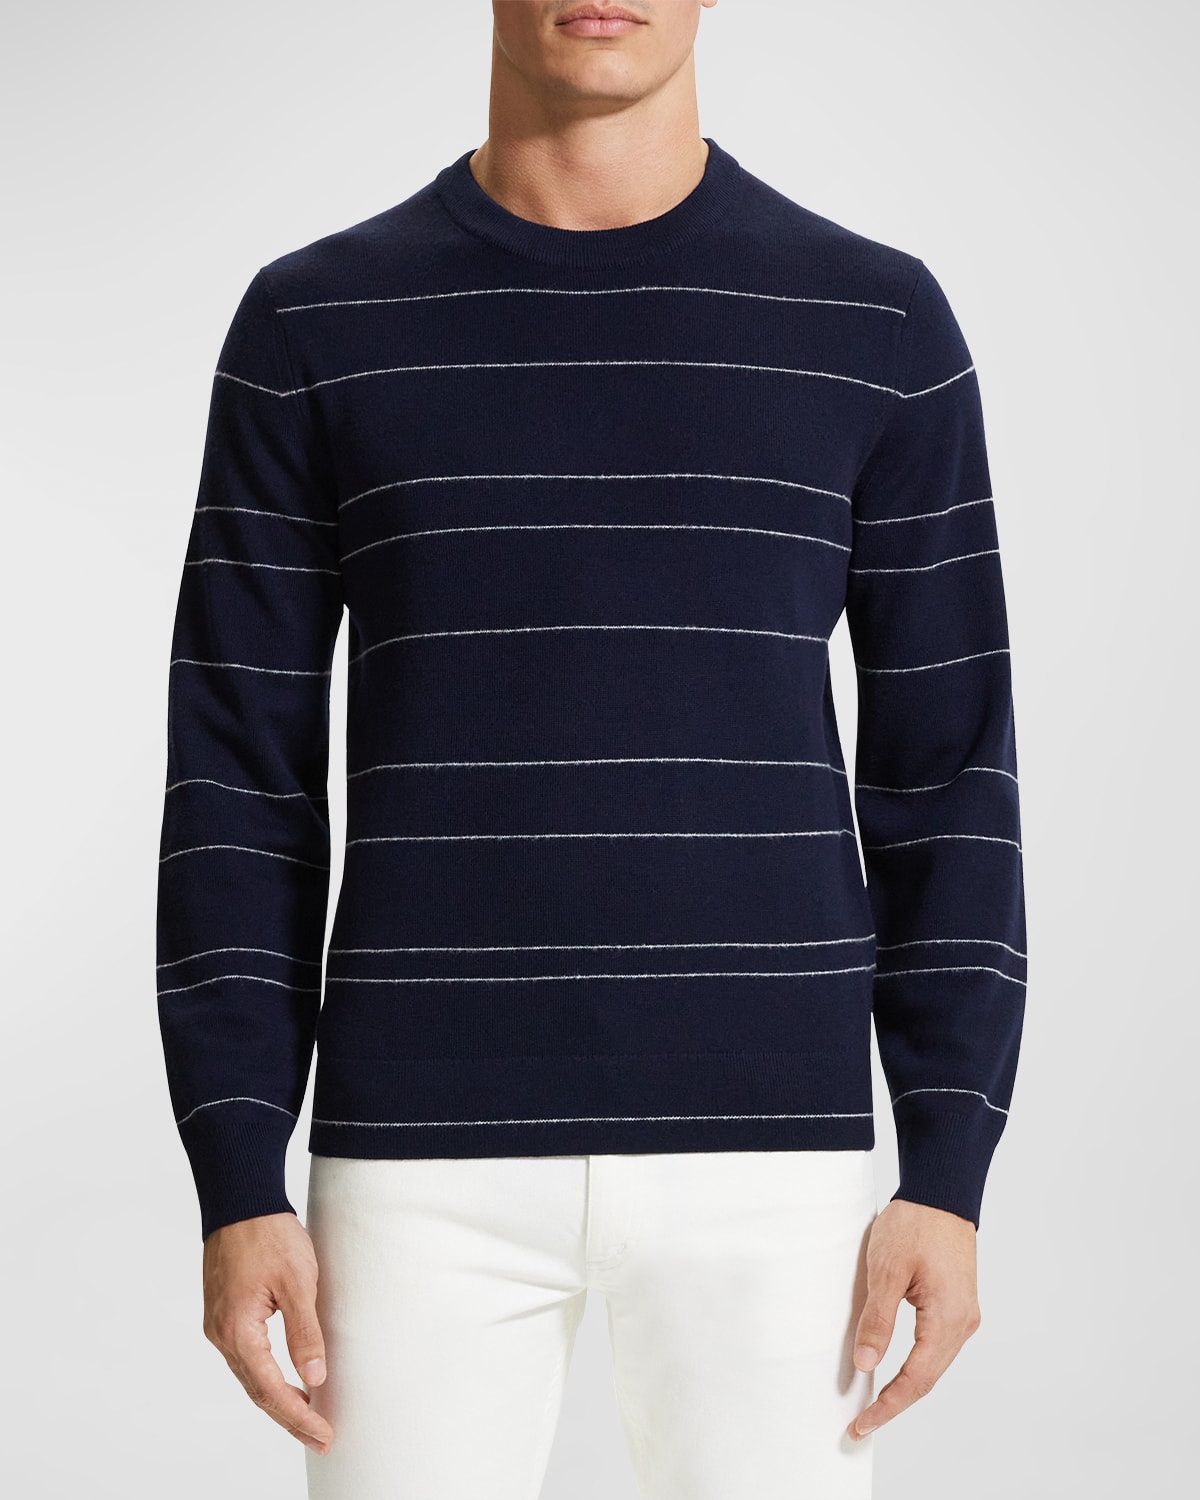 Men's Kenny Striped Wool Sweater